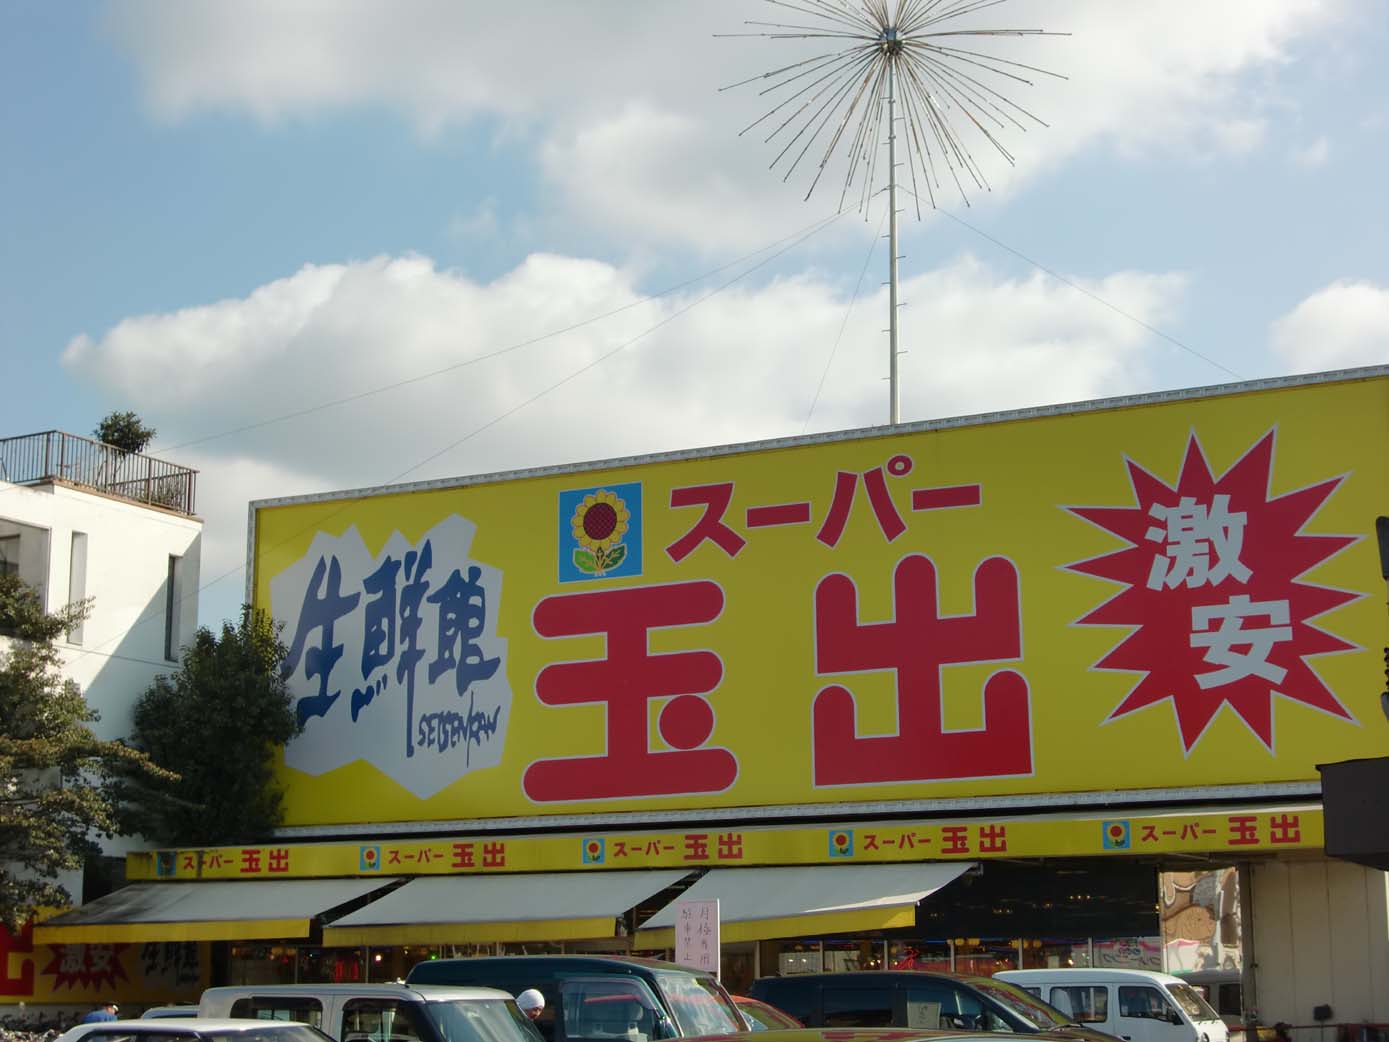 Supermarket. 1178m until Super Tamade Amami store (Super)